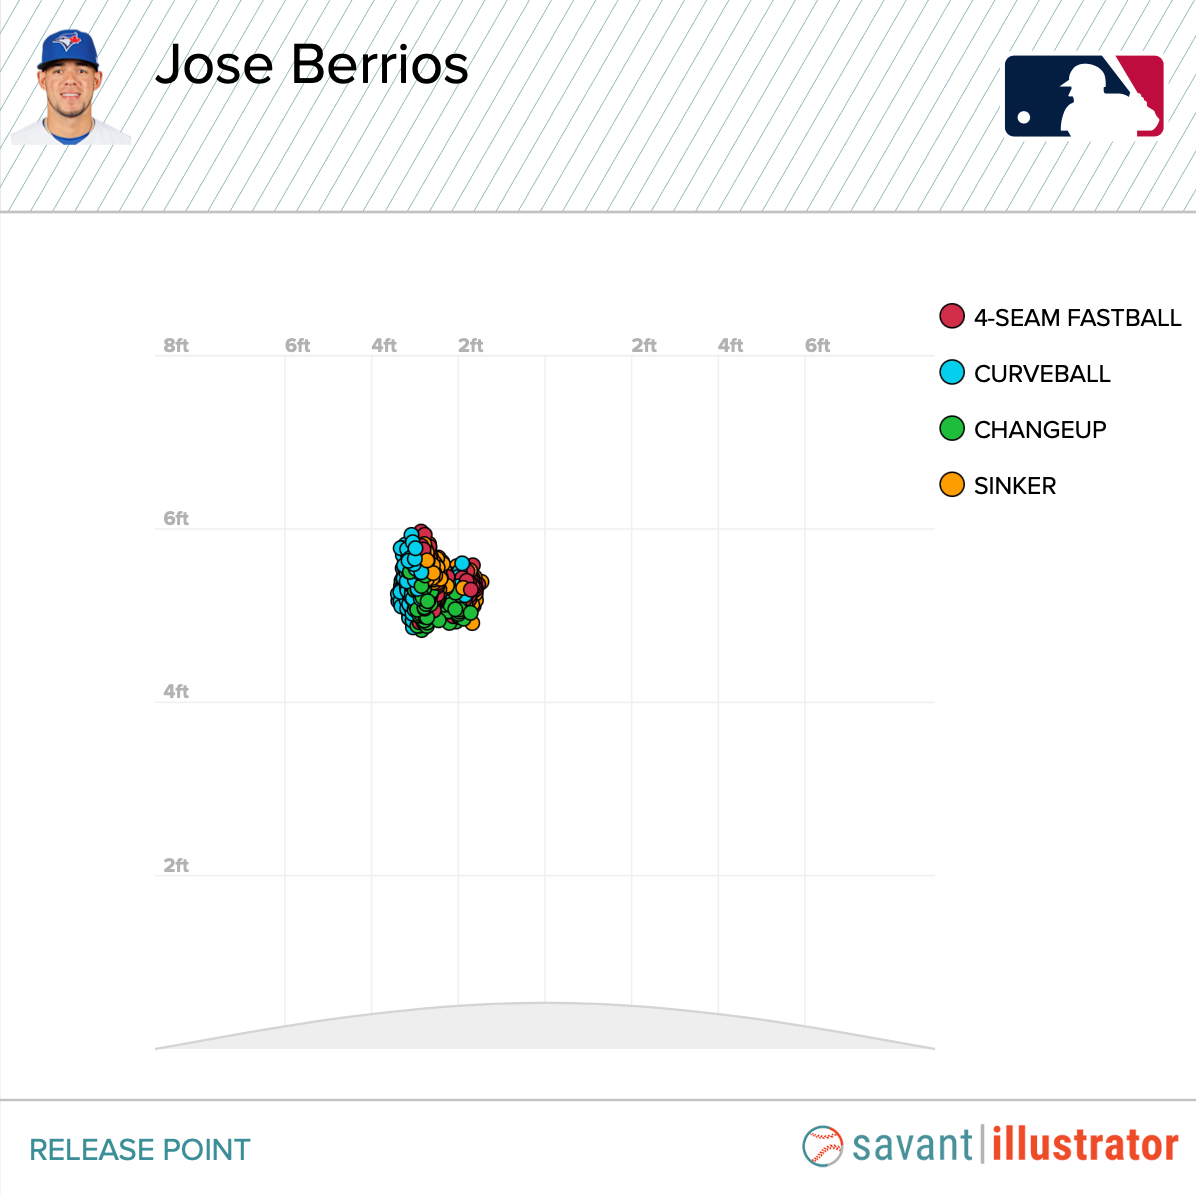 A Deep Dive Into Jose Berrios